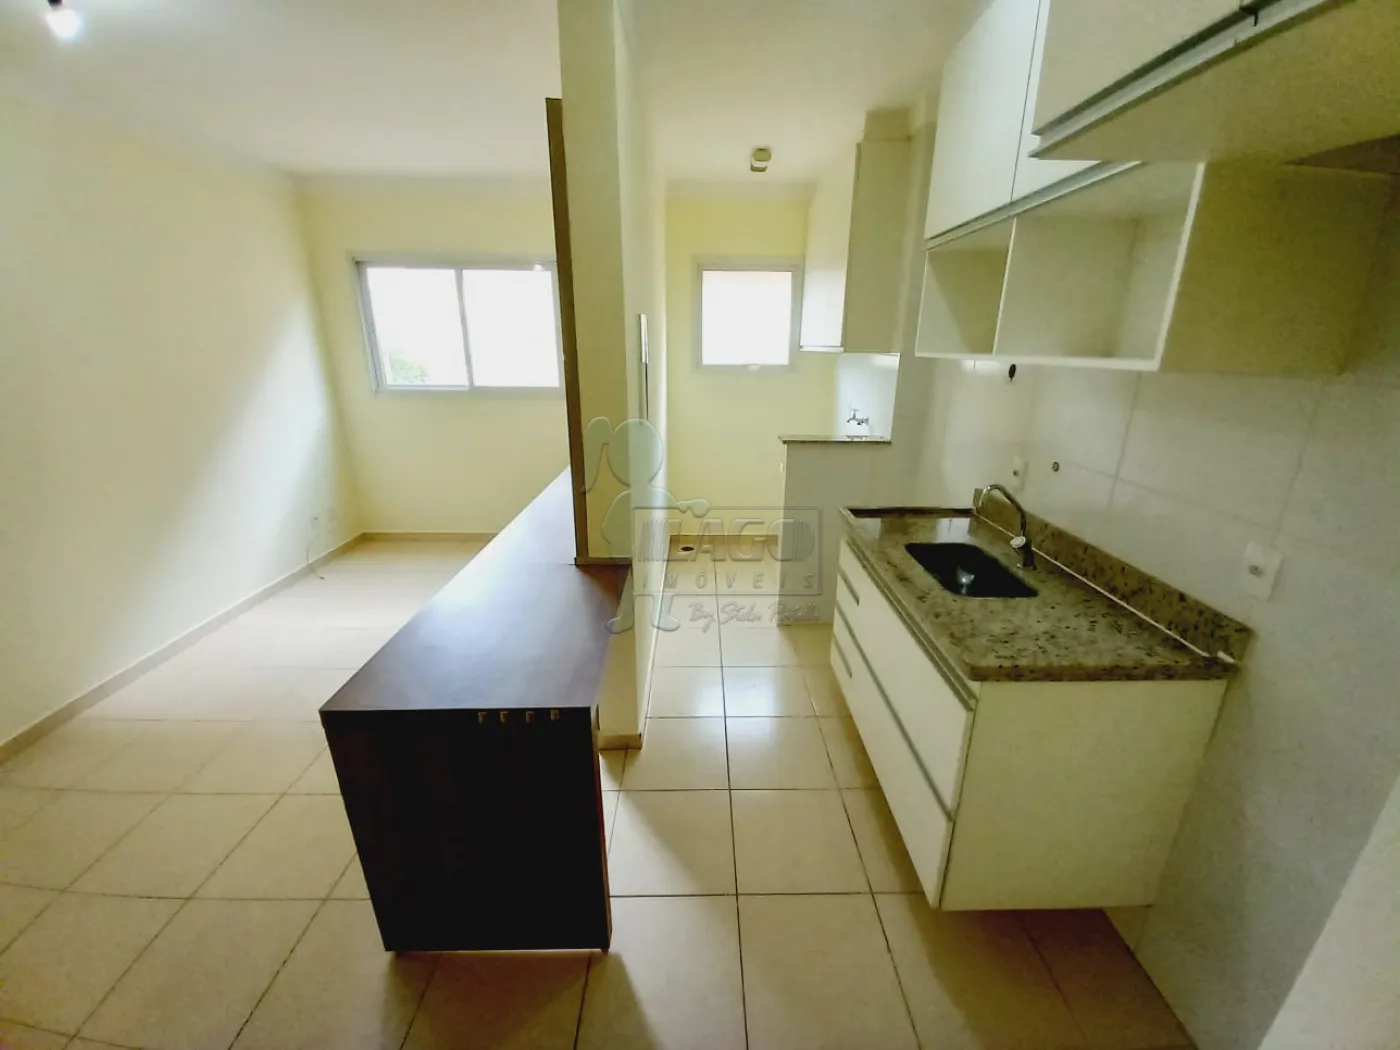 Alugar Apartamentos / Padrão em Ribeirão Preto R$ 1.300,00 - Foto 4